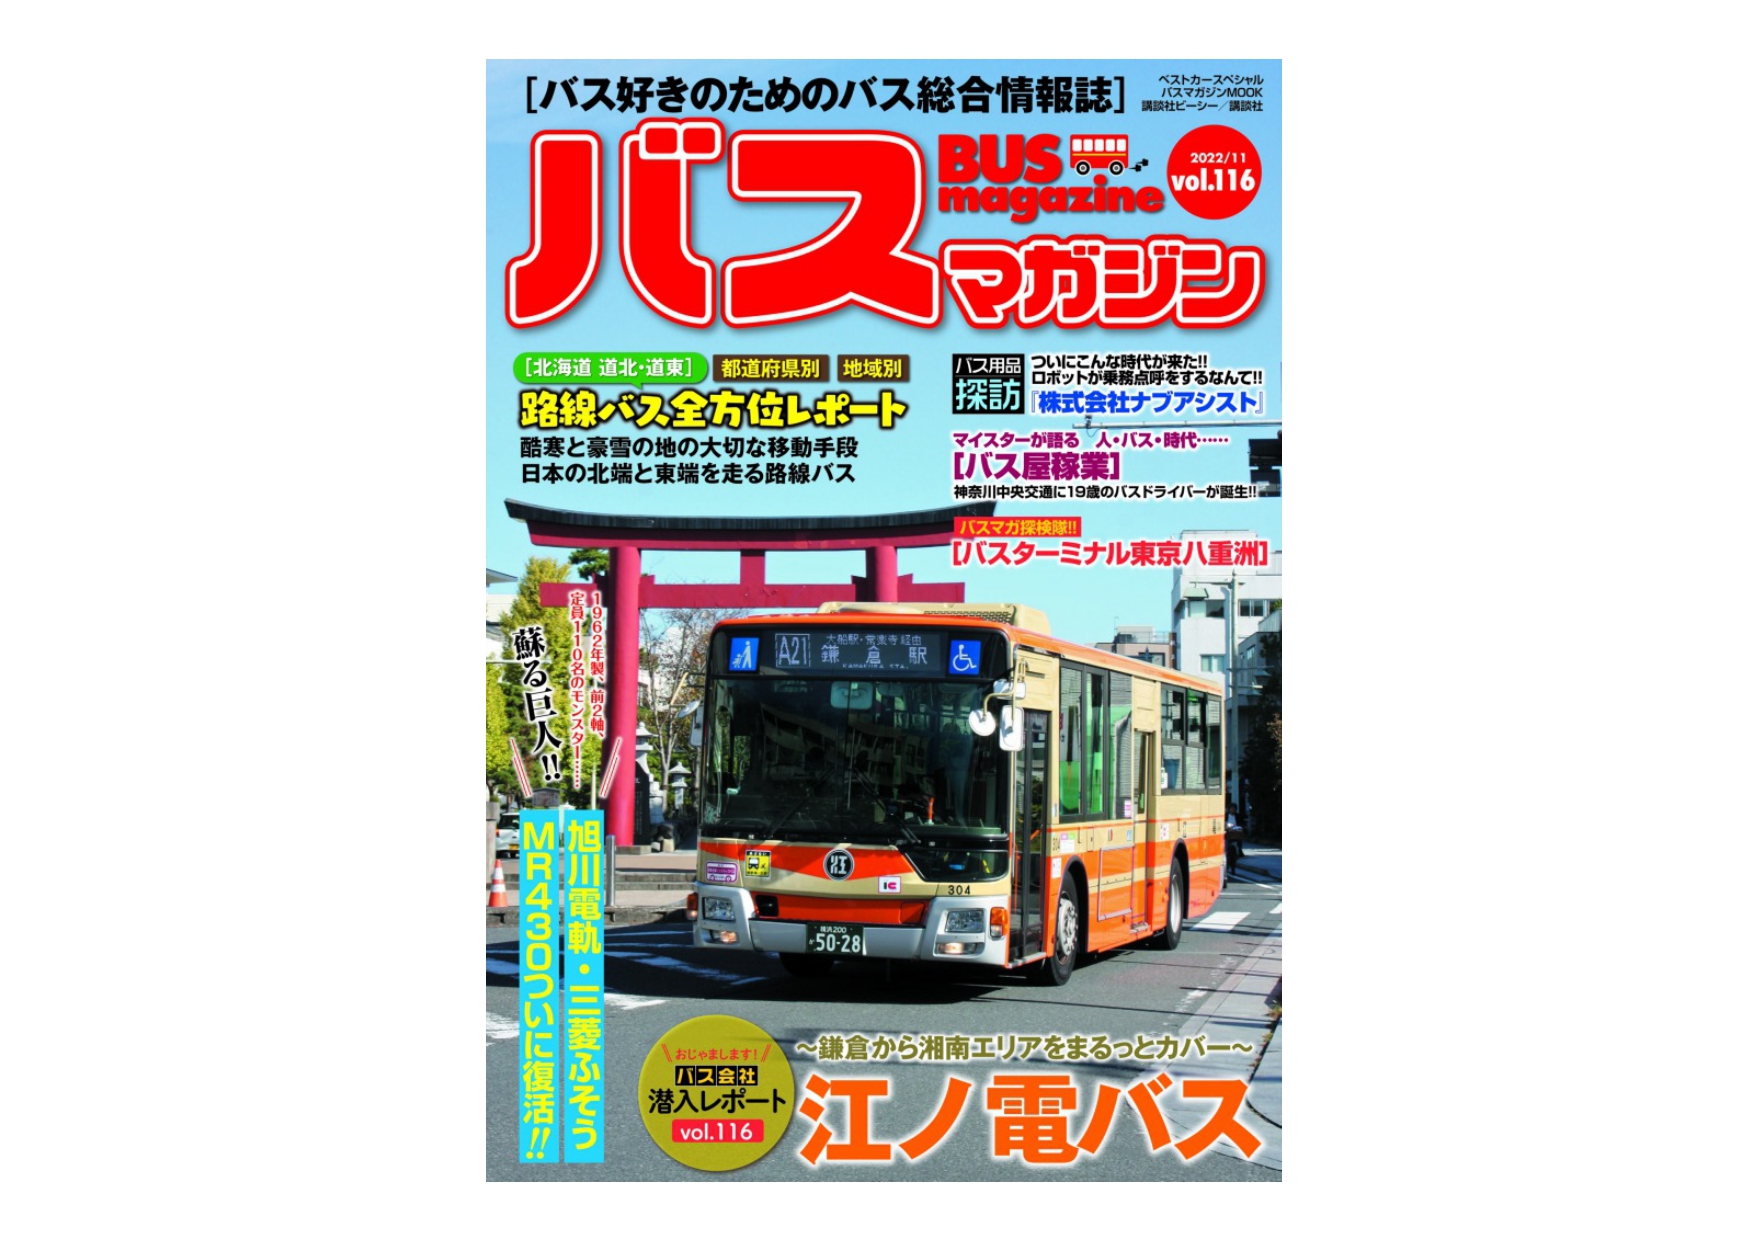 11月28日発売】バスマガジン116号!! 江ノ電バス特集や幻の名車三菱 